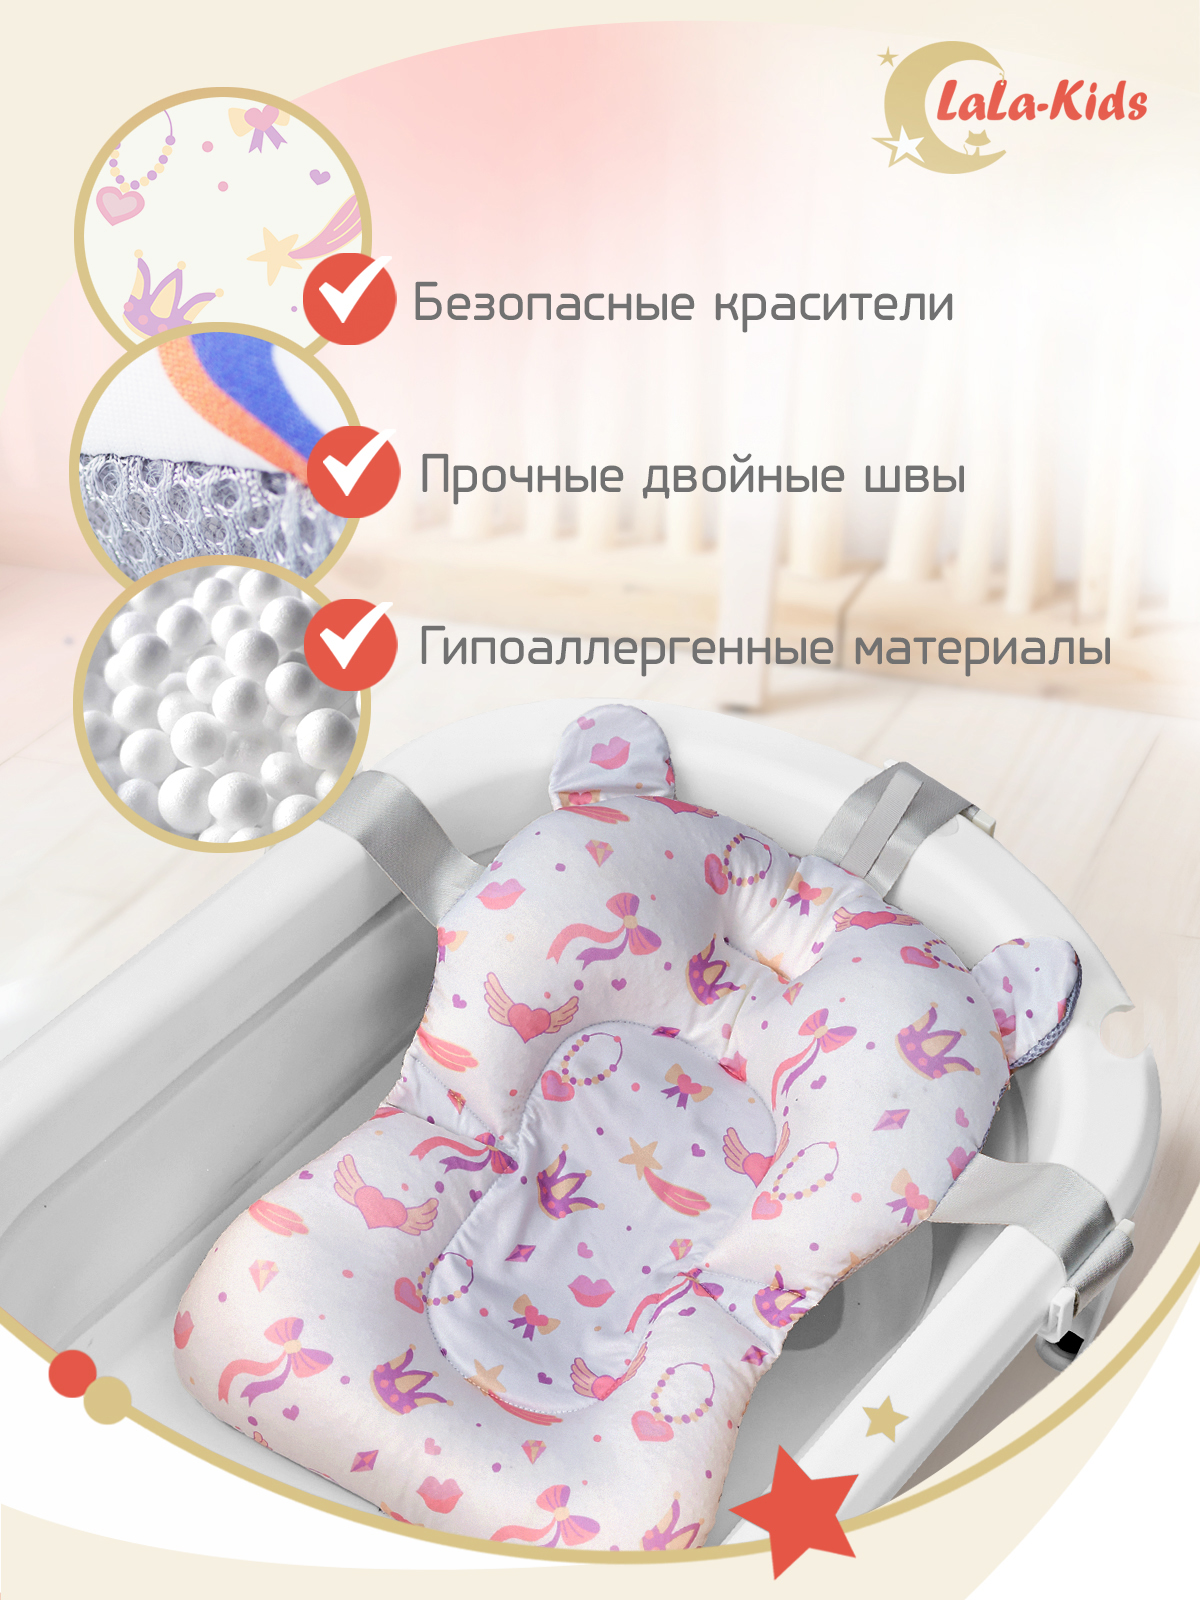 Детская ванночка с термометром LaLa-Kids складная с матрасиком персиковым в комплекте - фото 15